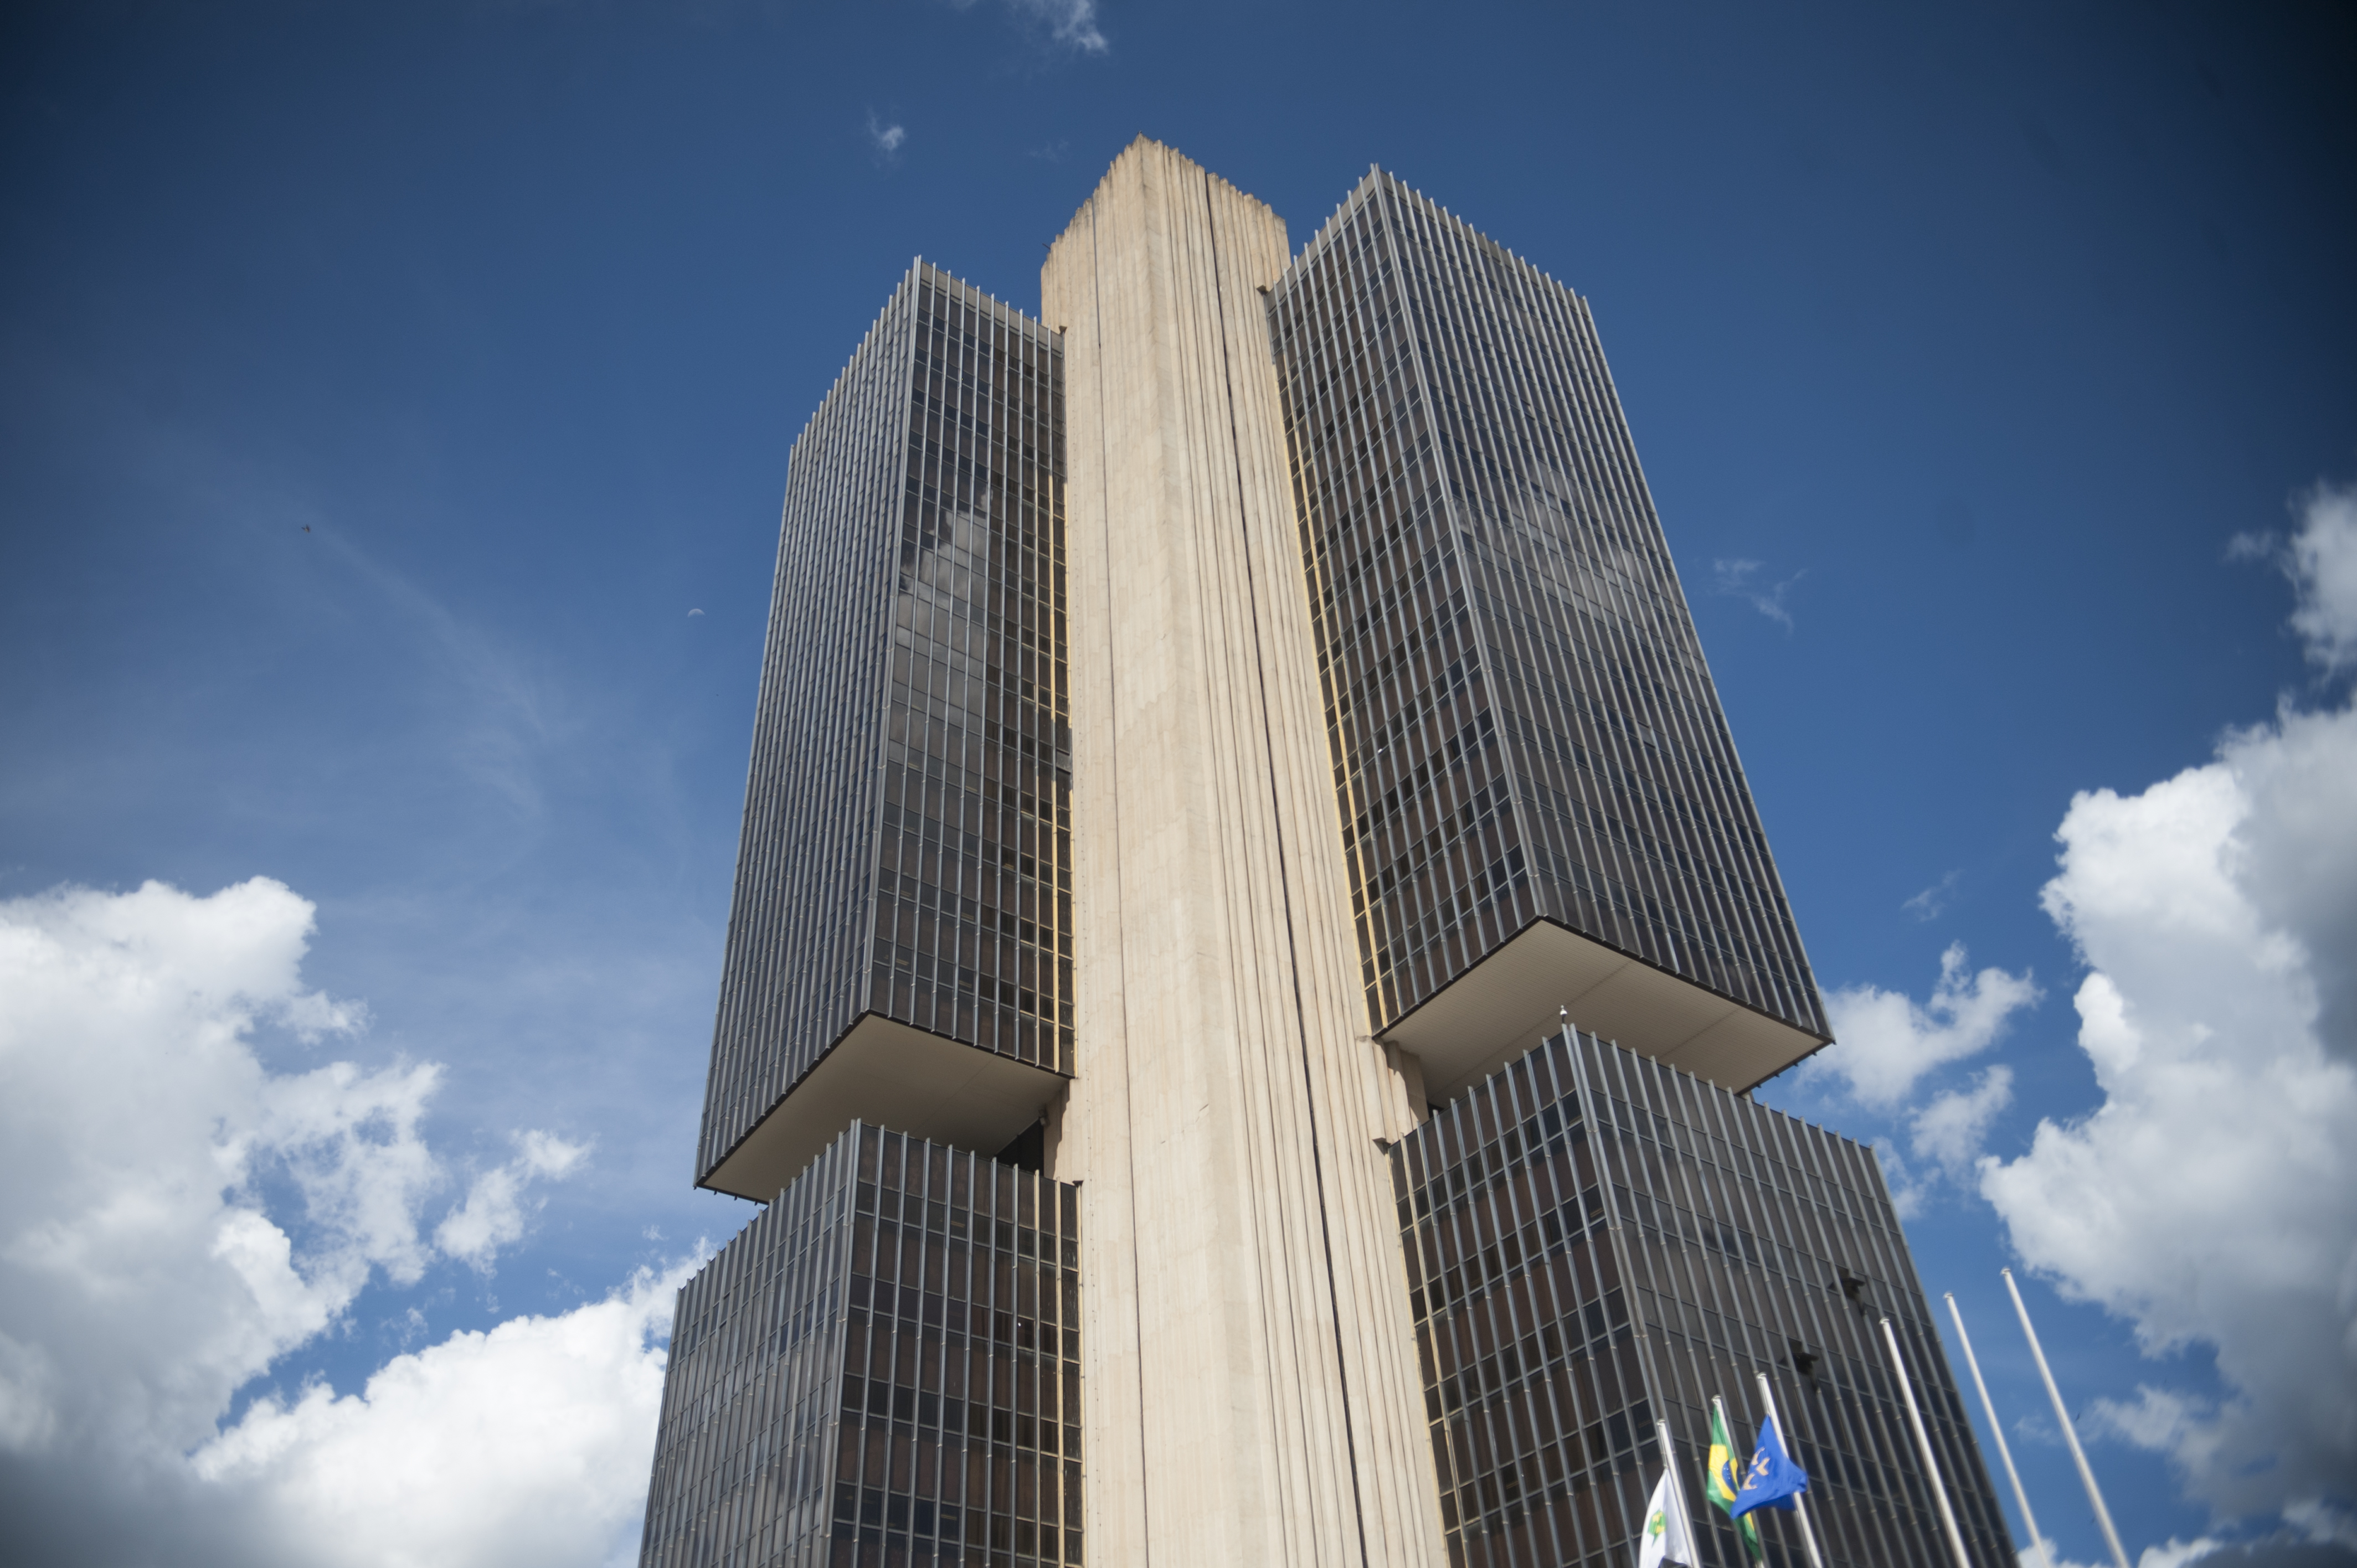 Integrantes do Banco Central acreditam que dificilmente escândalo de fraude envolvendo grandes bancos chegará ao Brasil